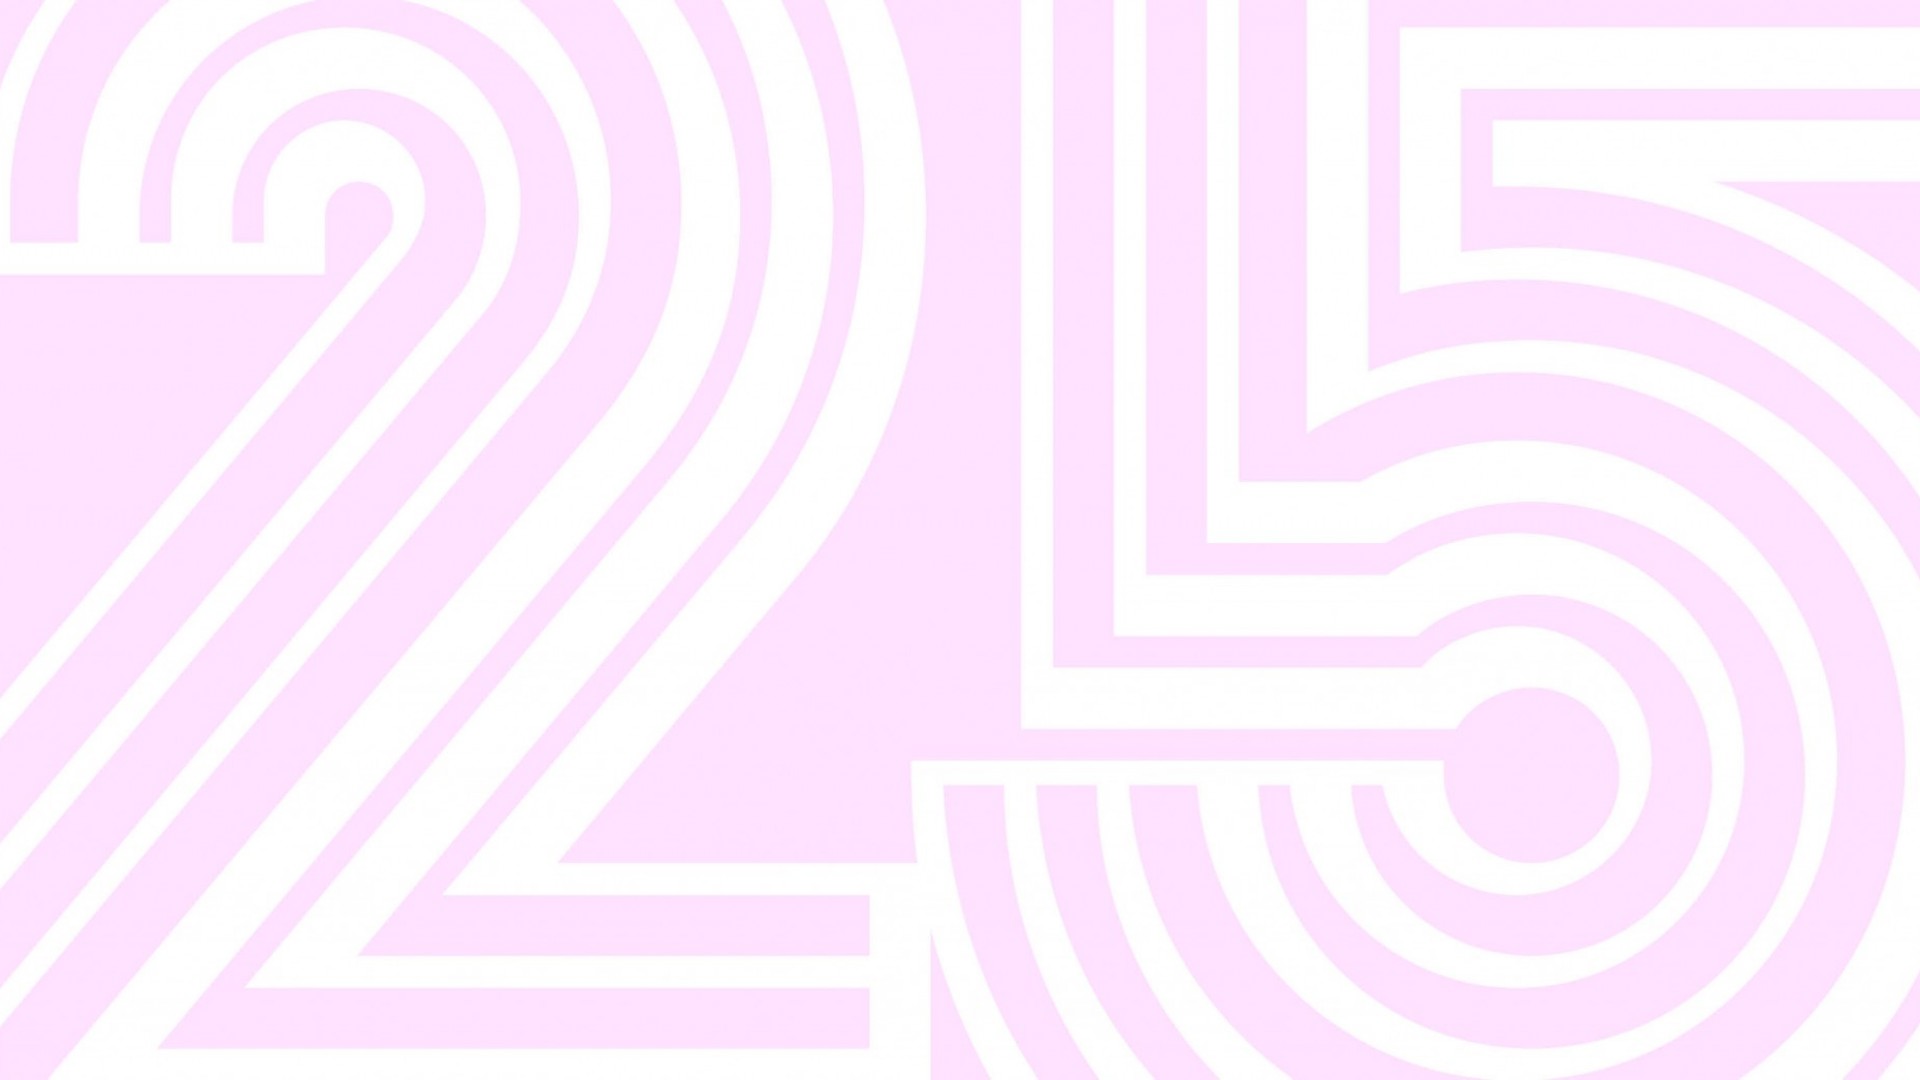 [Online] Twenty Five - Les 25 prochaines années par les moins de 25 ans